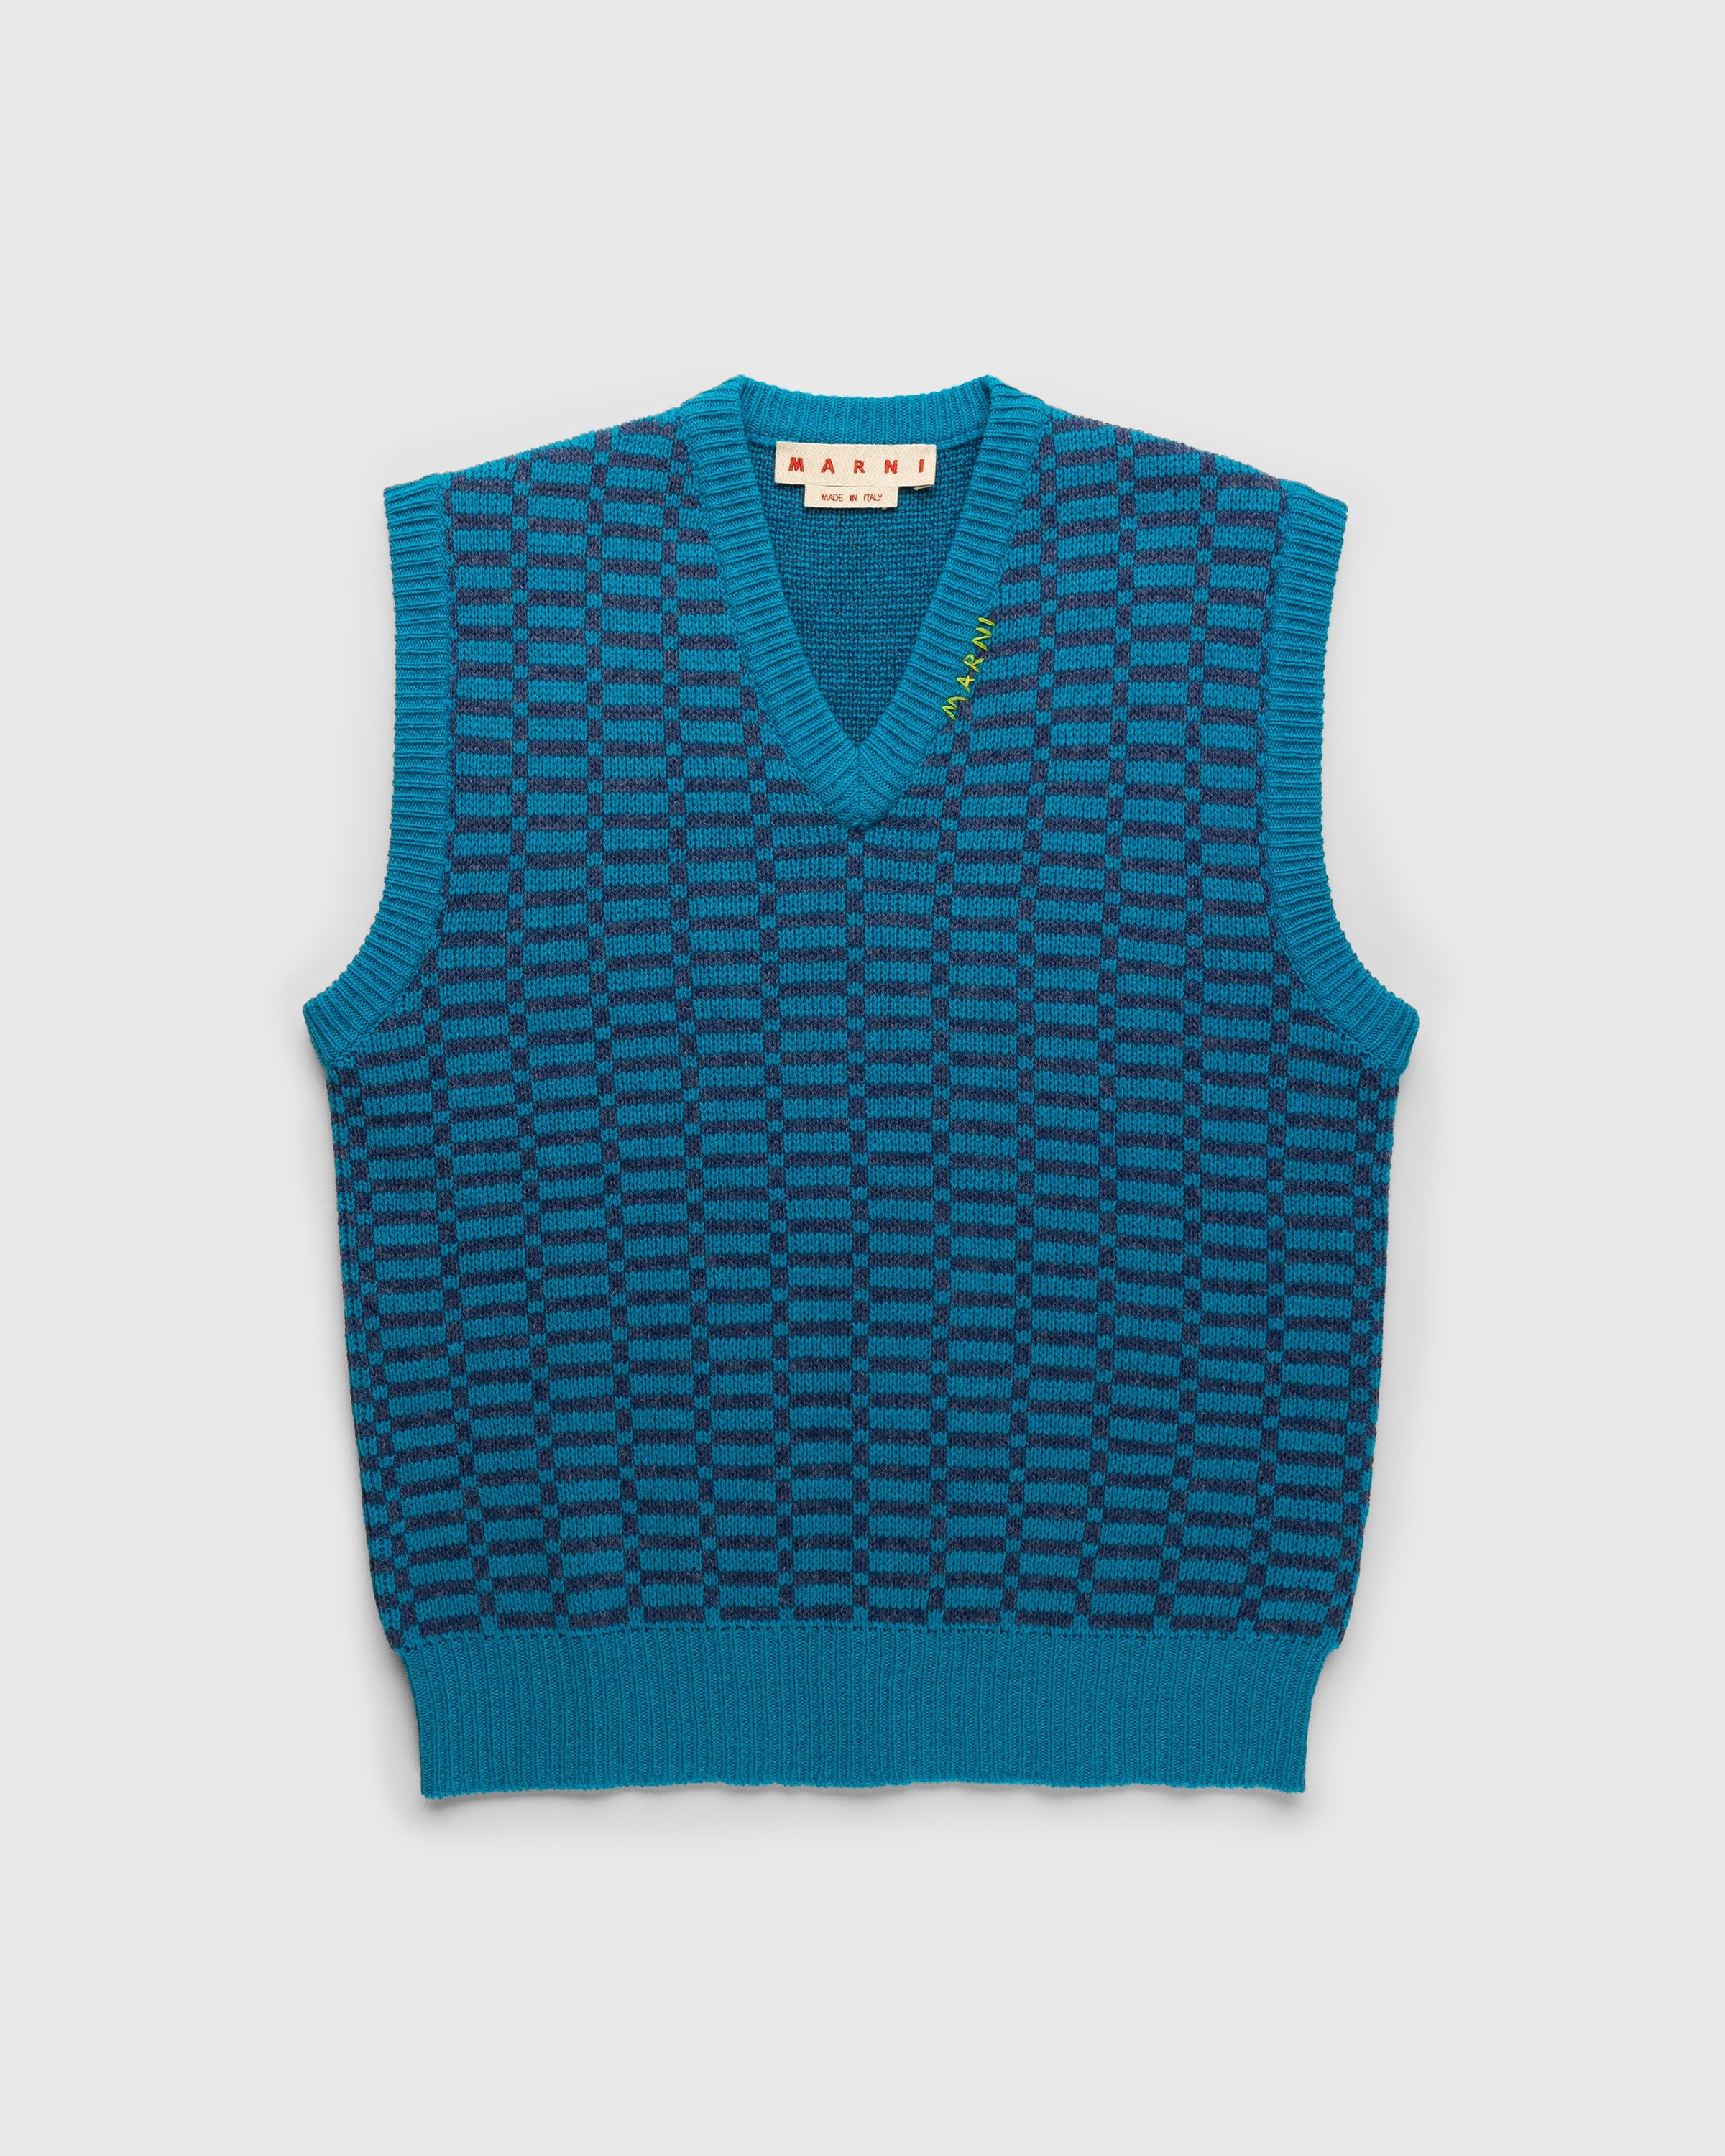 Marni – Shetland Wool V-Neck Sweater Vest Blue - Gilets - Blue - Image 1